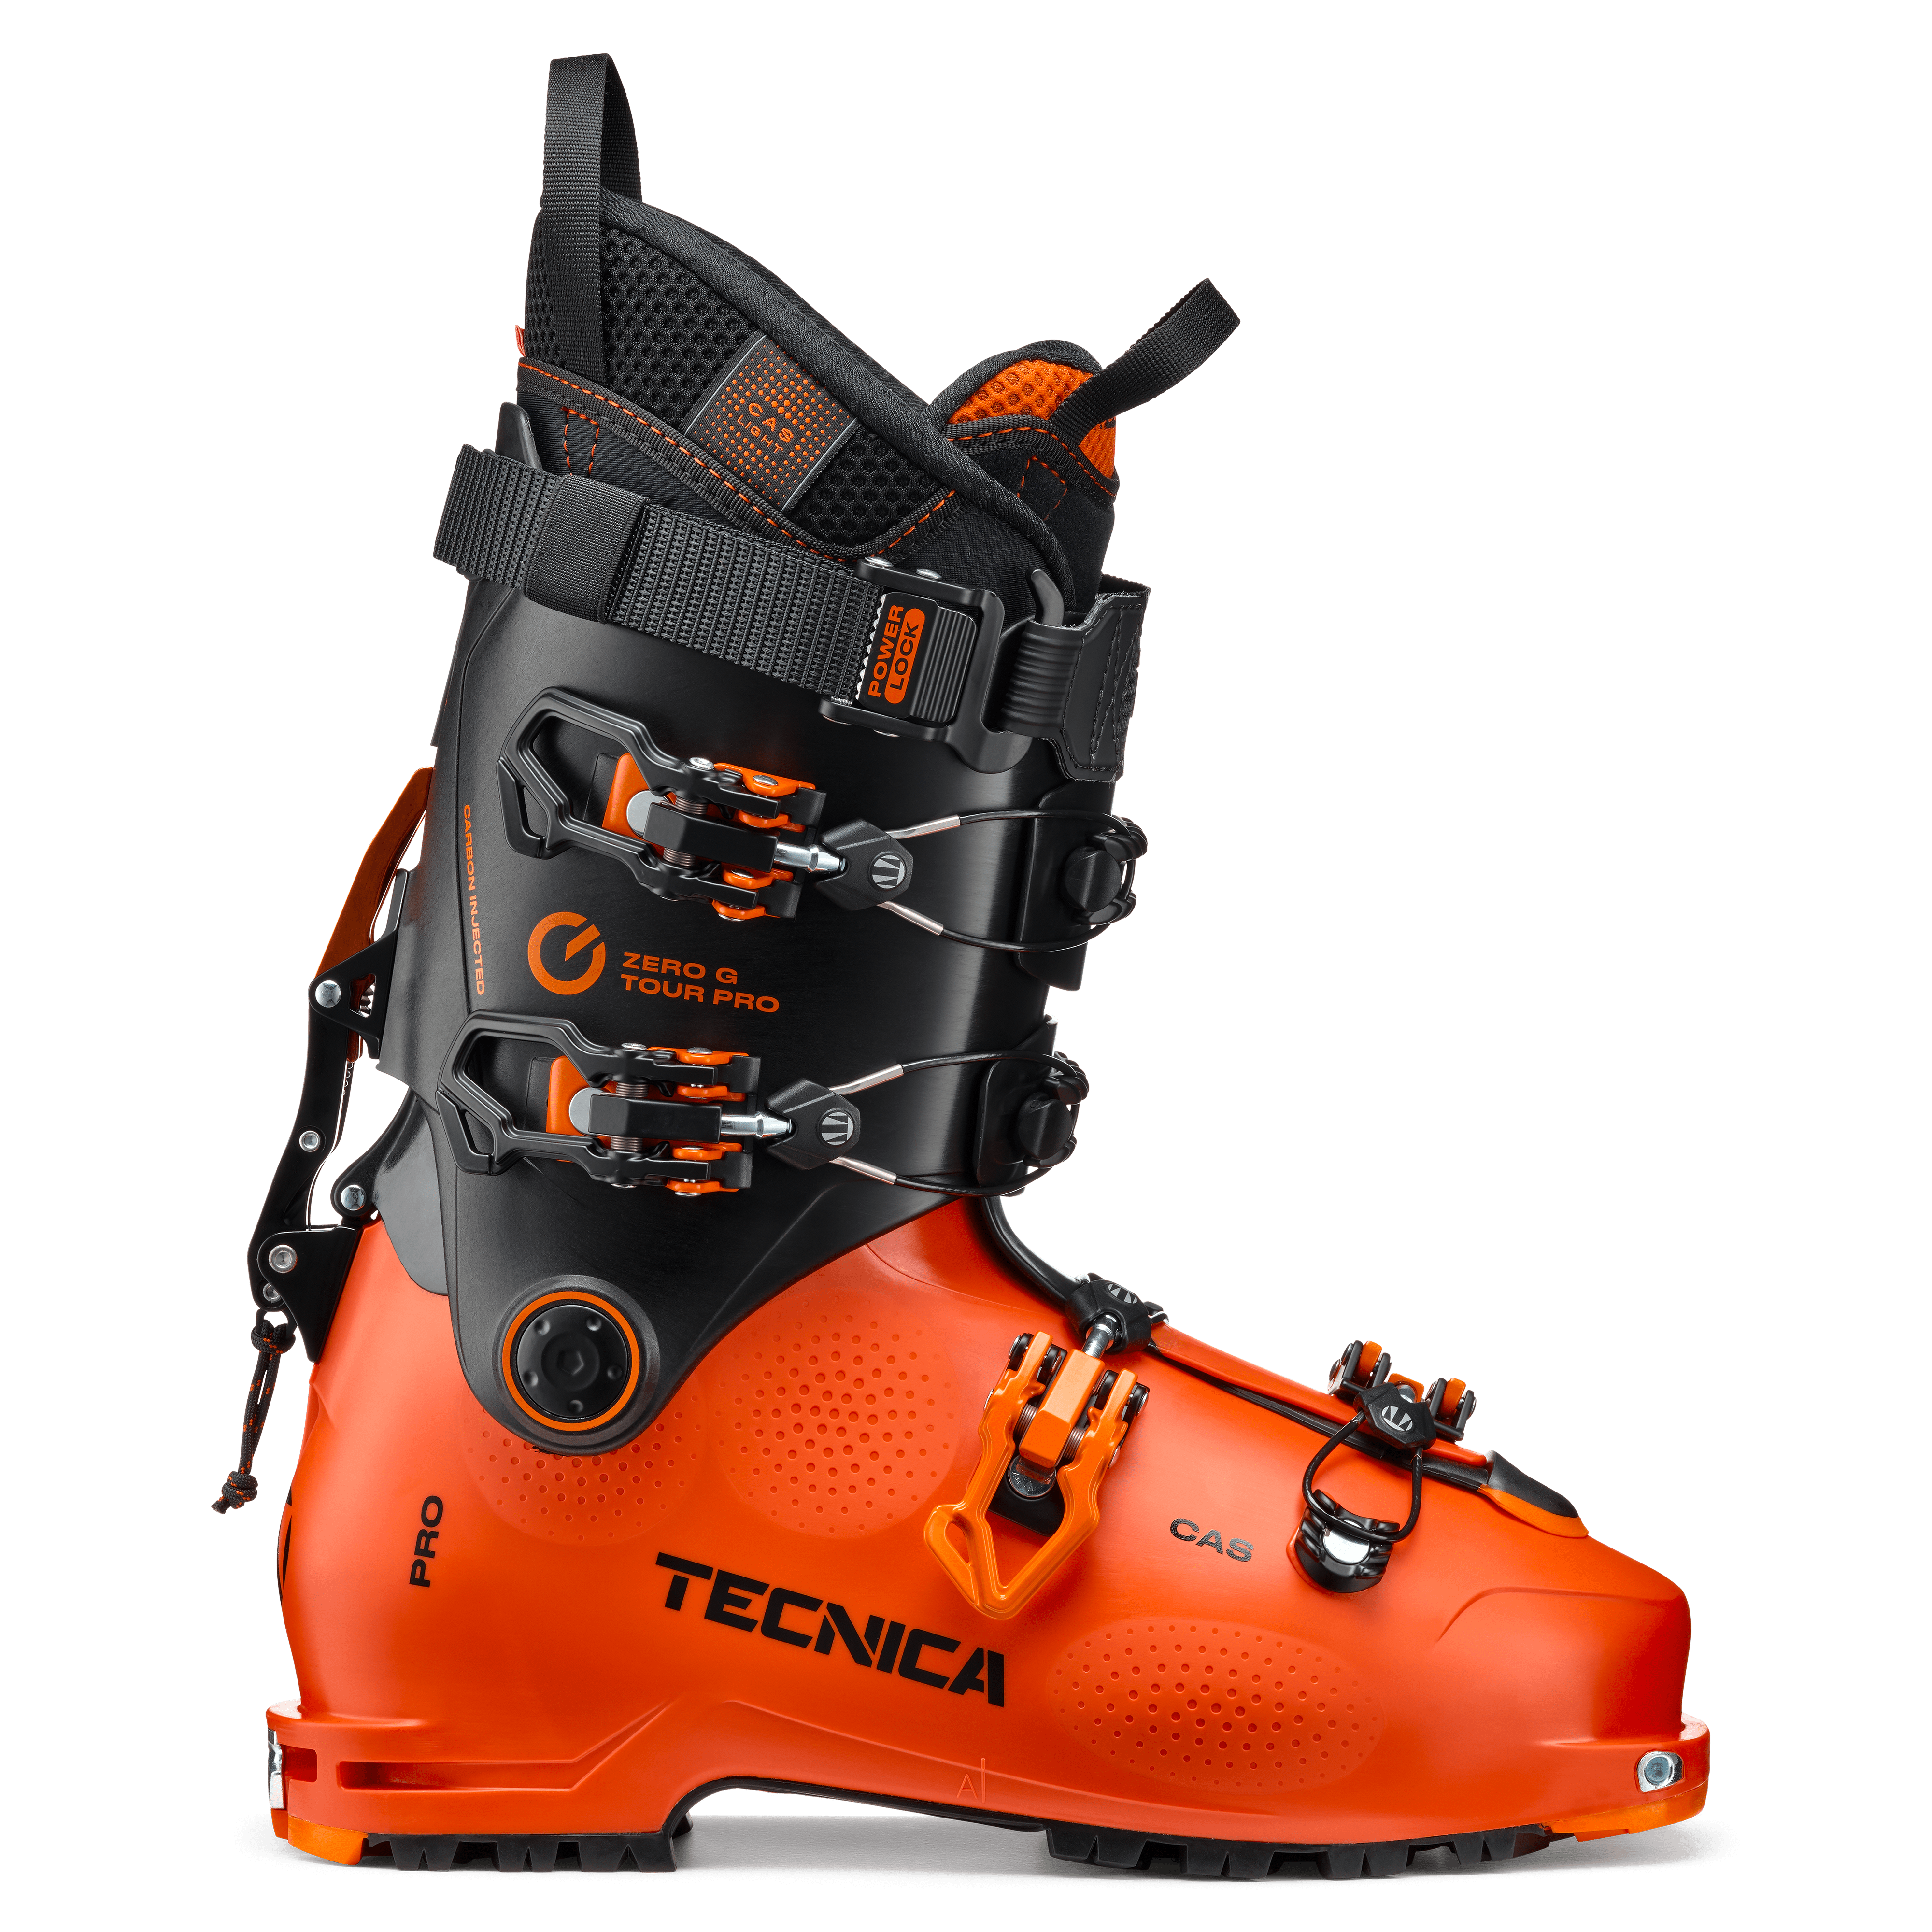 Tecnica Zero G Tour Pro Ski Boots · 2023